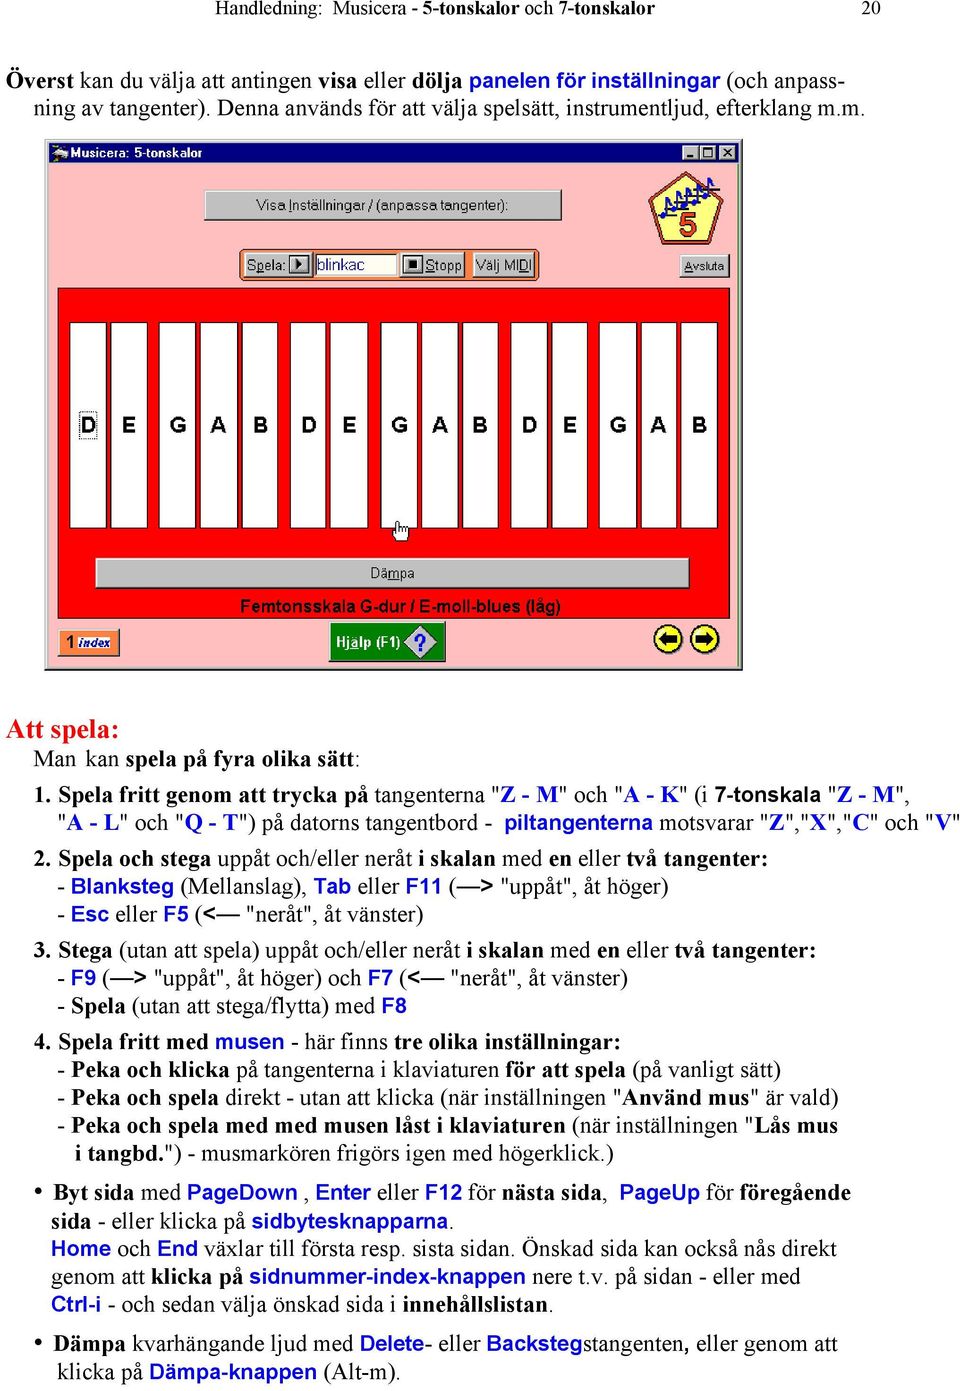 Spela fritt genom att trycka på tangenterna "Z - M" och "A - K" (i 7-tonskala "Z - M", "A - L" och "Q - T") på datorns tangentbord - piltangenterna motsvarar "Z","X","C" och "V" 2.